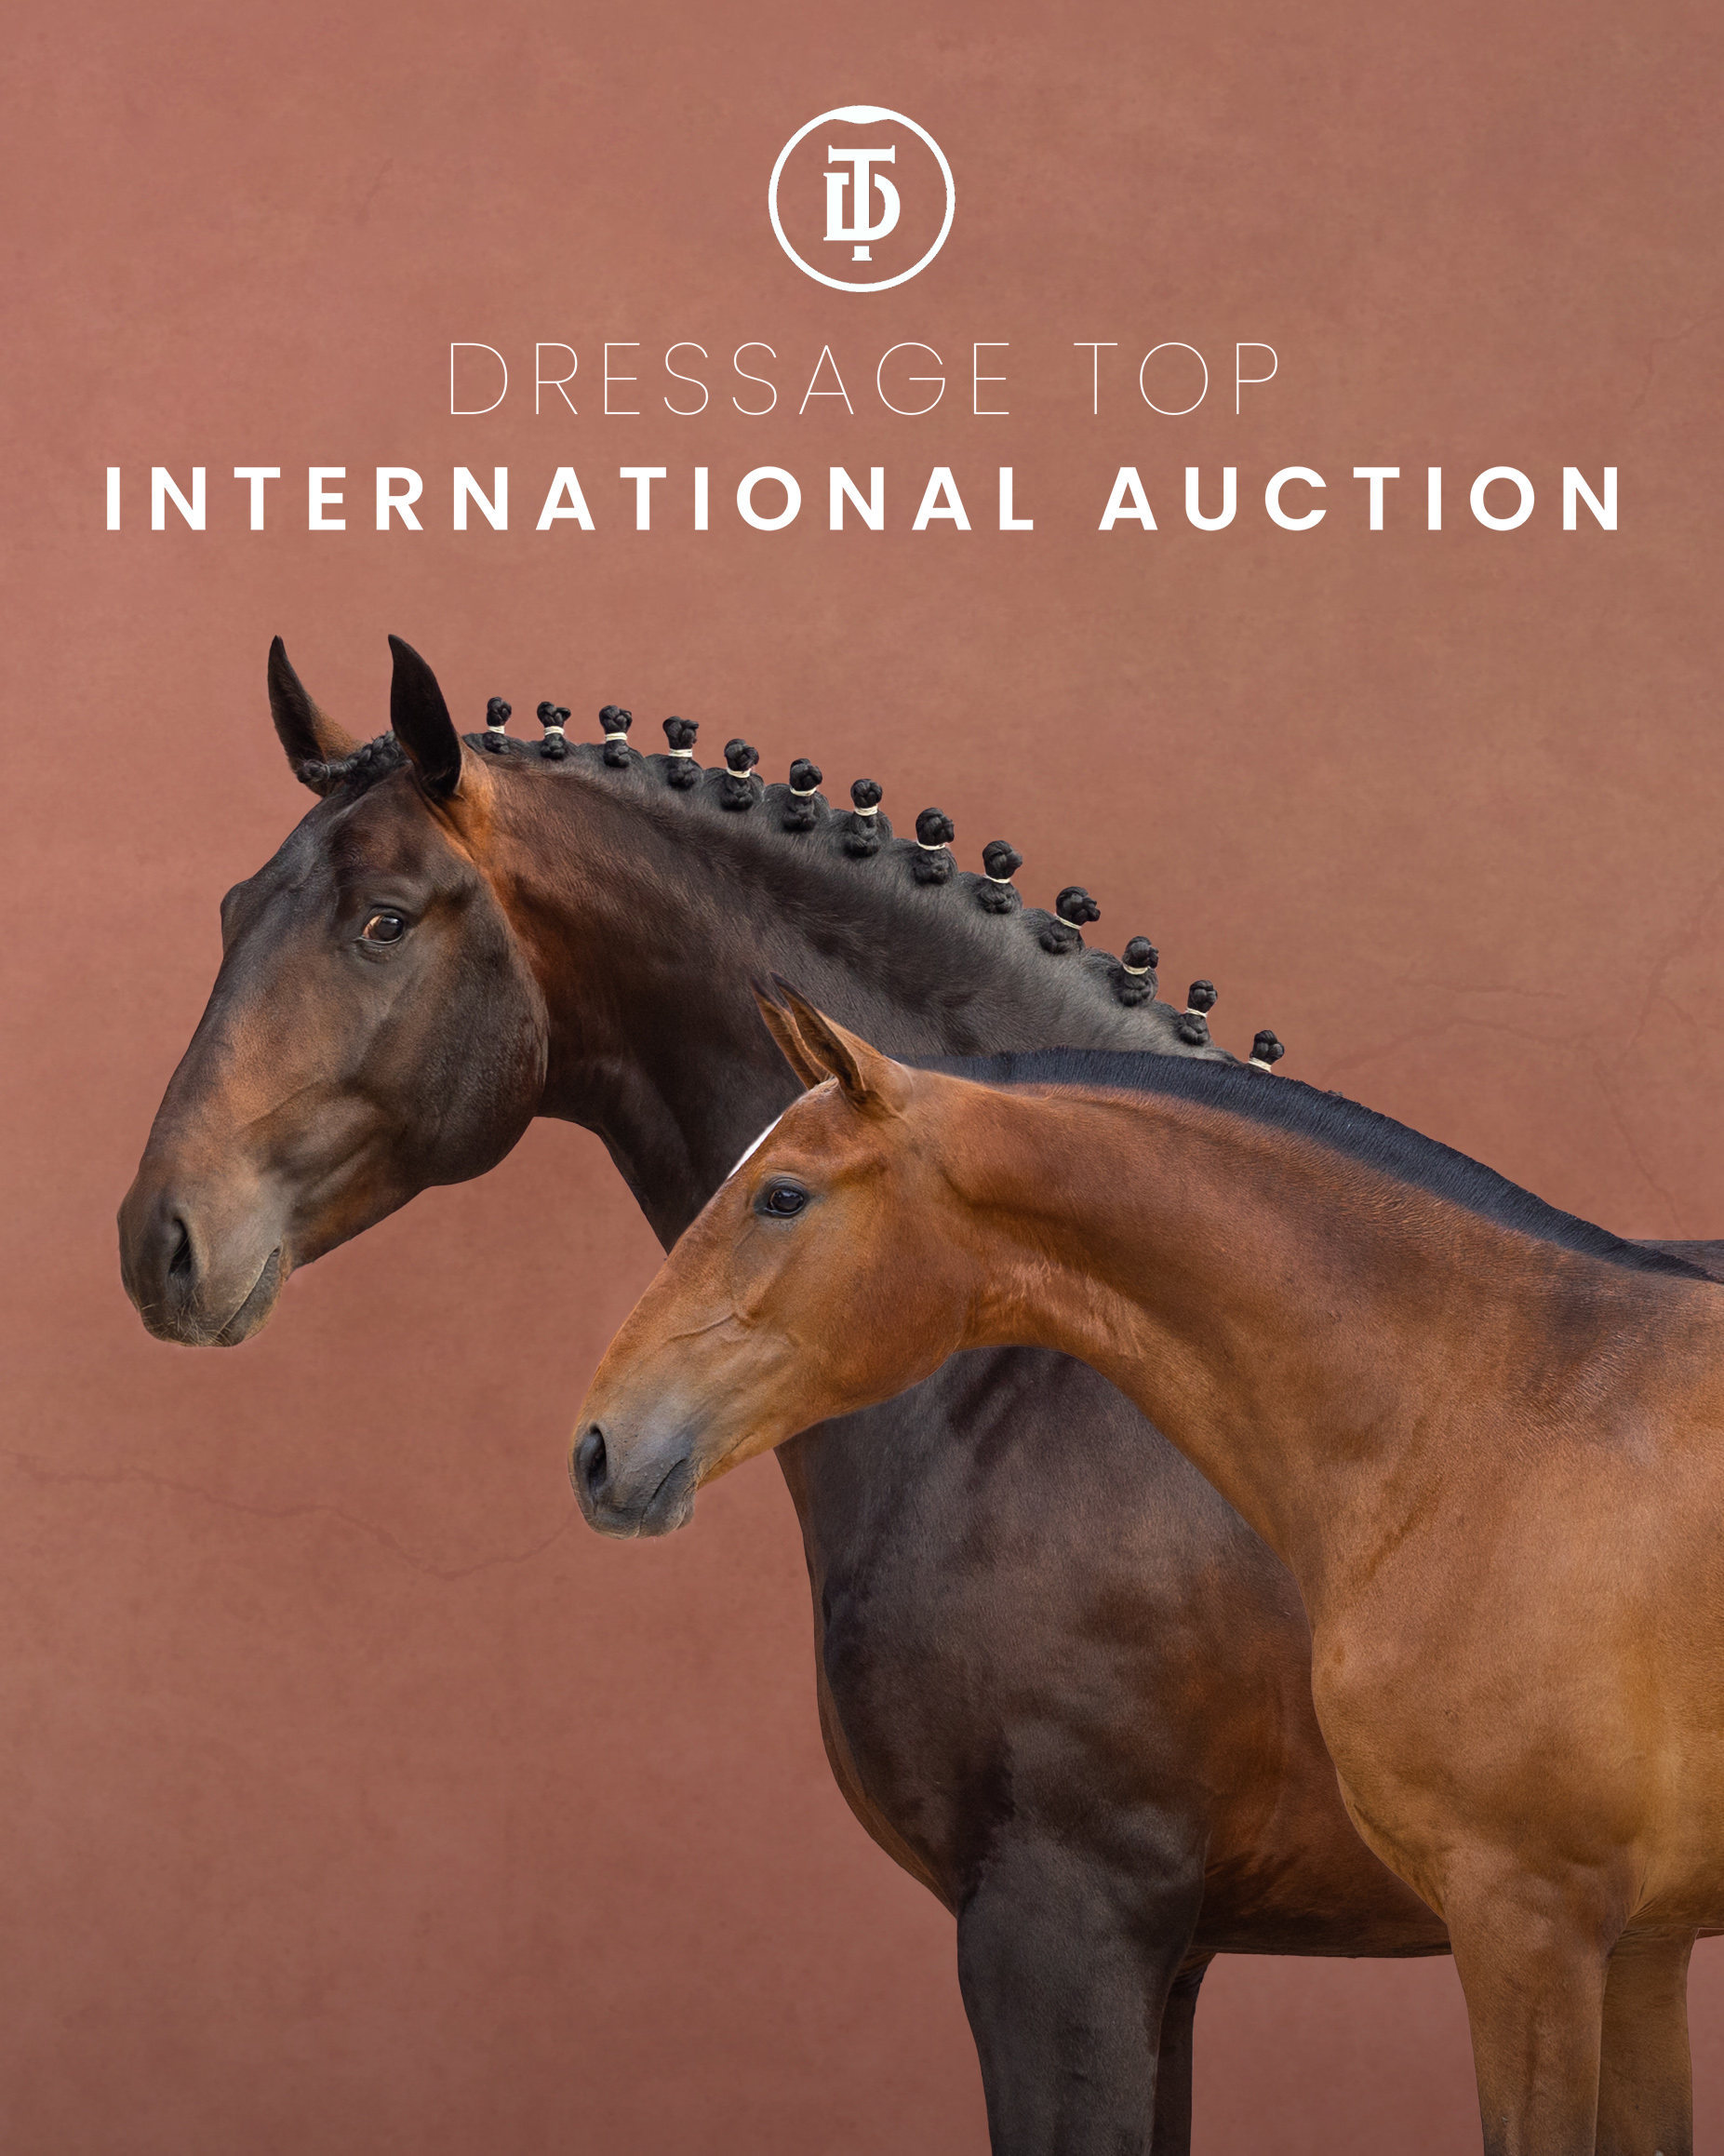 Dressage Top Auction